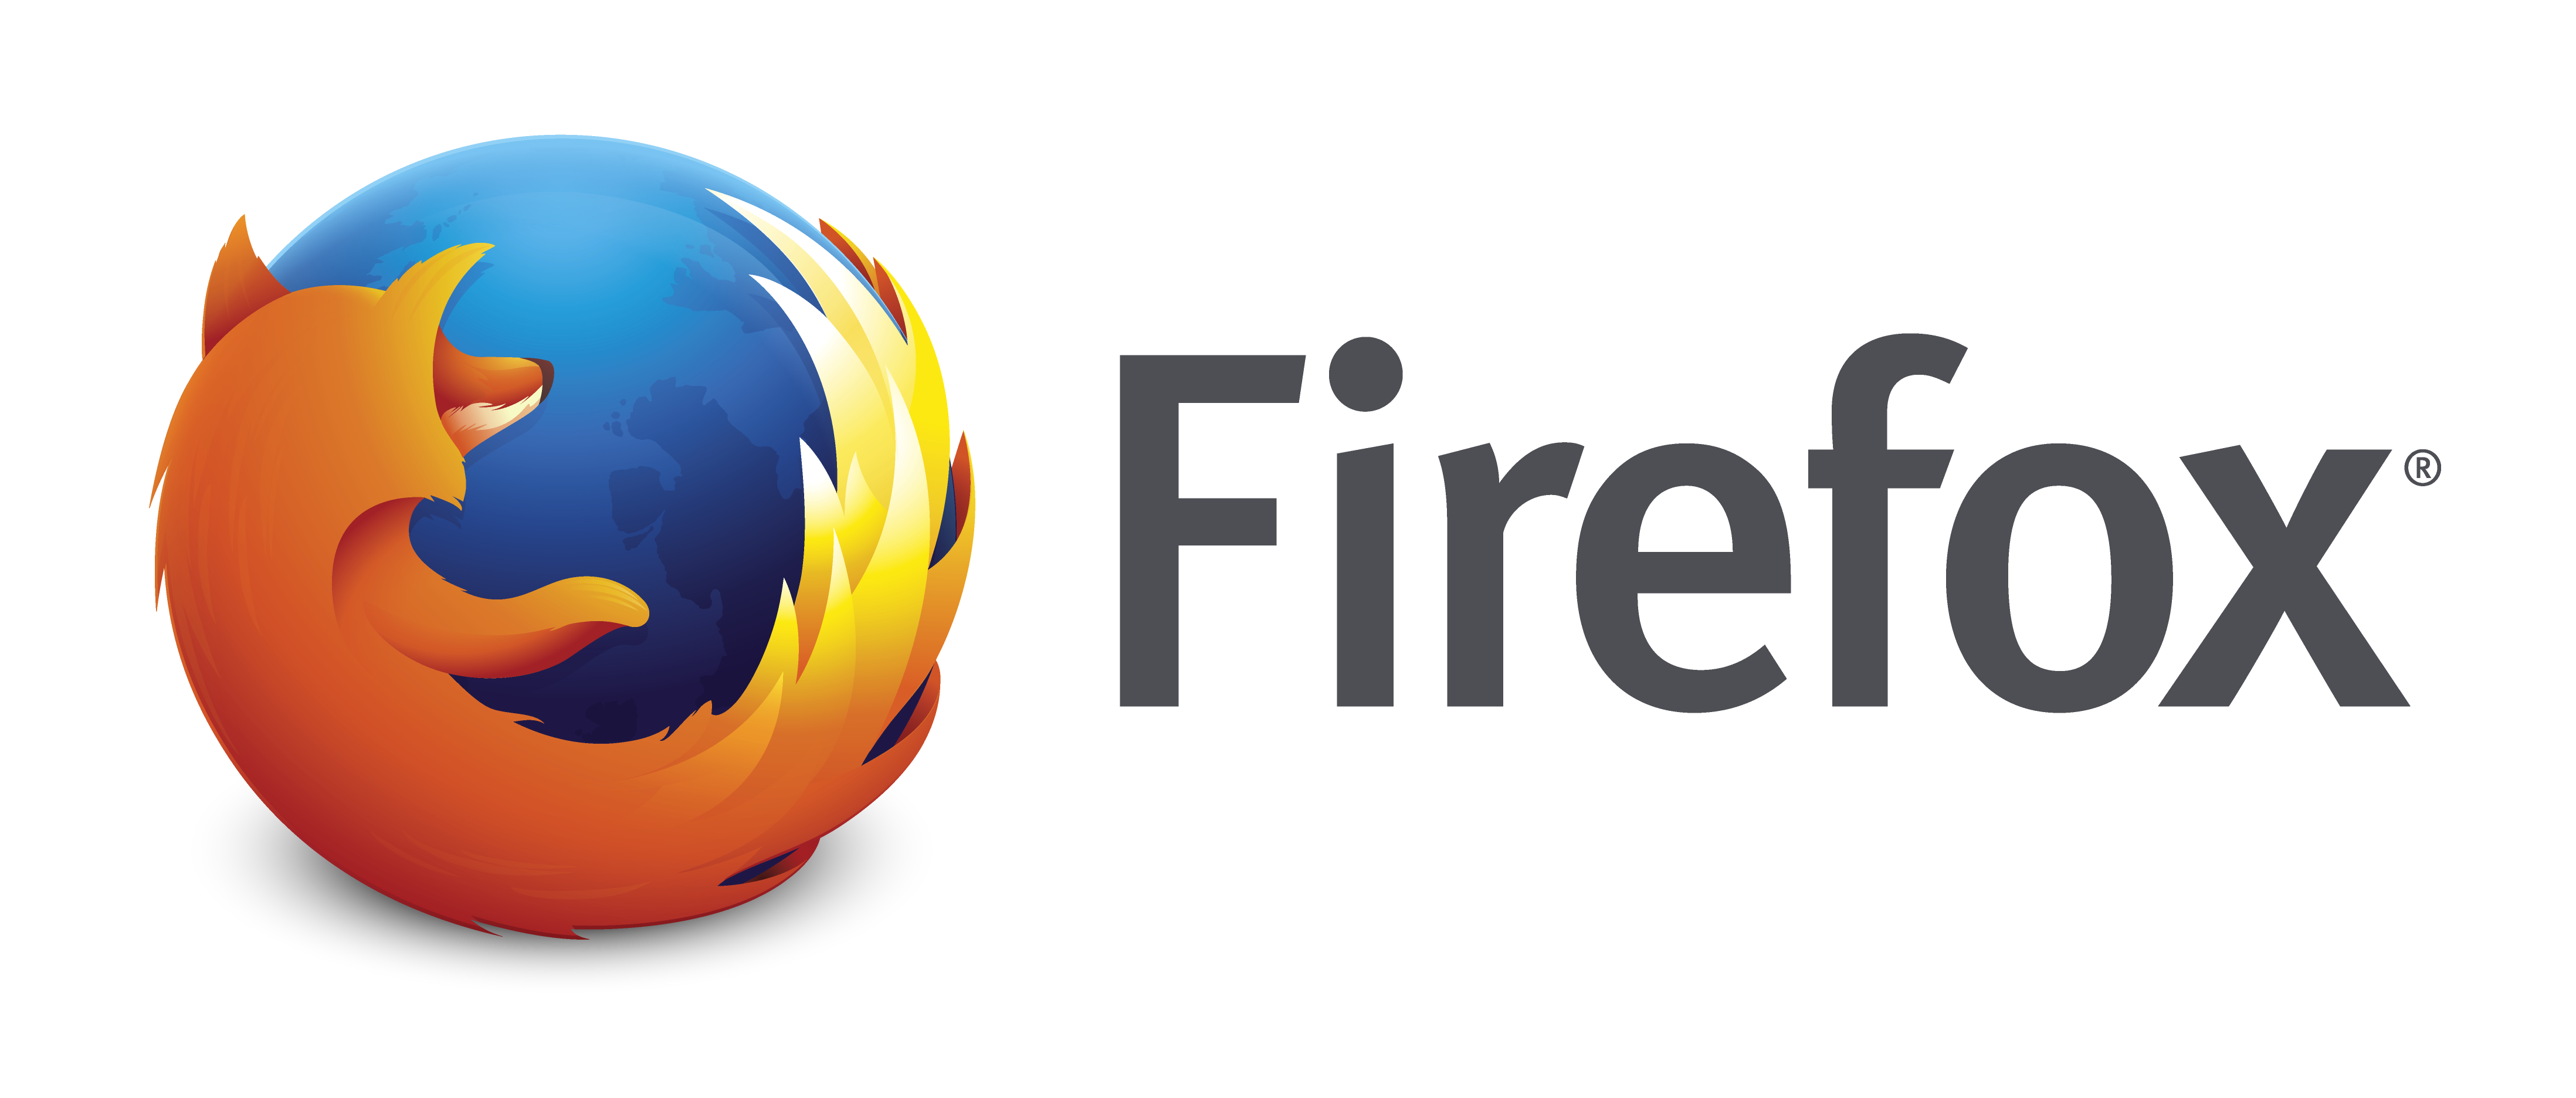 آخرین نسخه مرورگر فایرفاکس توانایی مدیریت بیش از ۱۵۰۰ زبانه را دارد